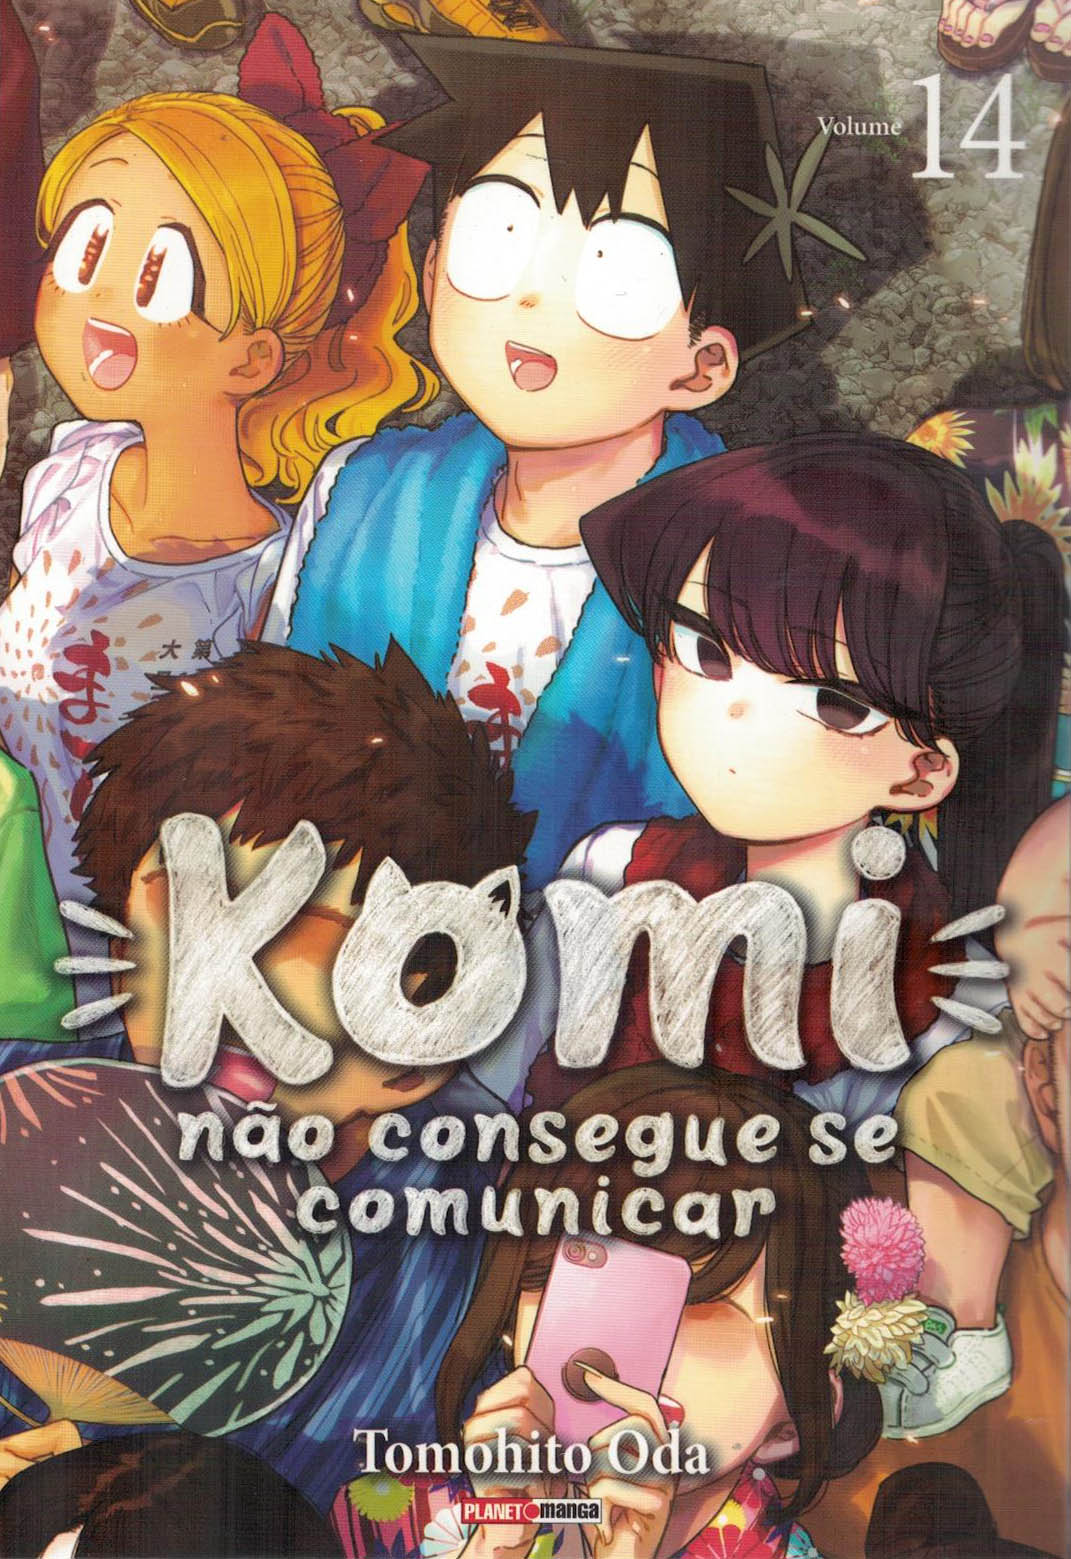 Komi não Consegue se Comunicar Vol. 17